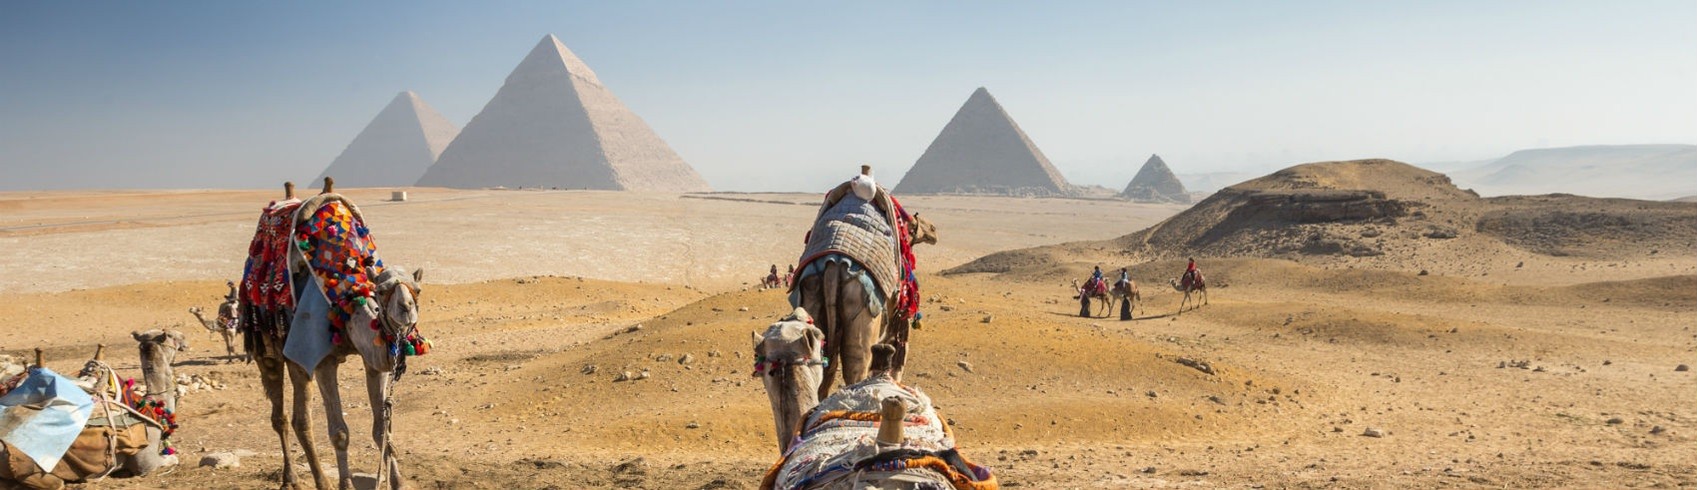 EGYPT FAMILY TOURS | EGYPT US TOURS